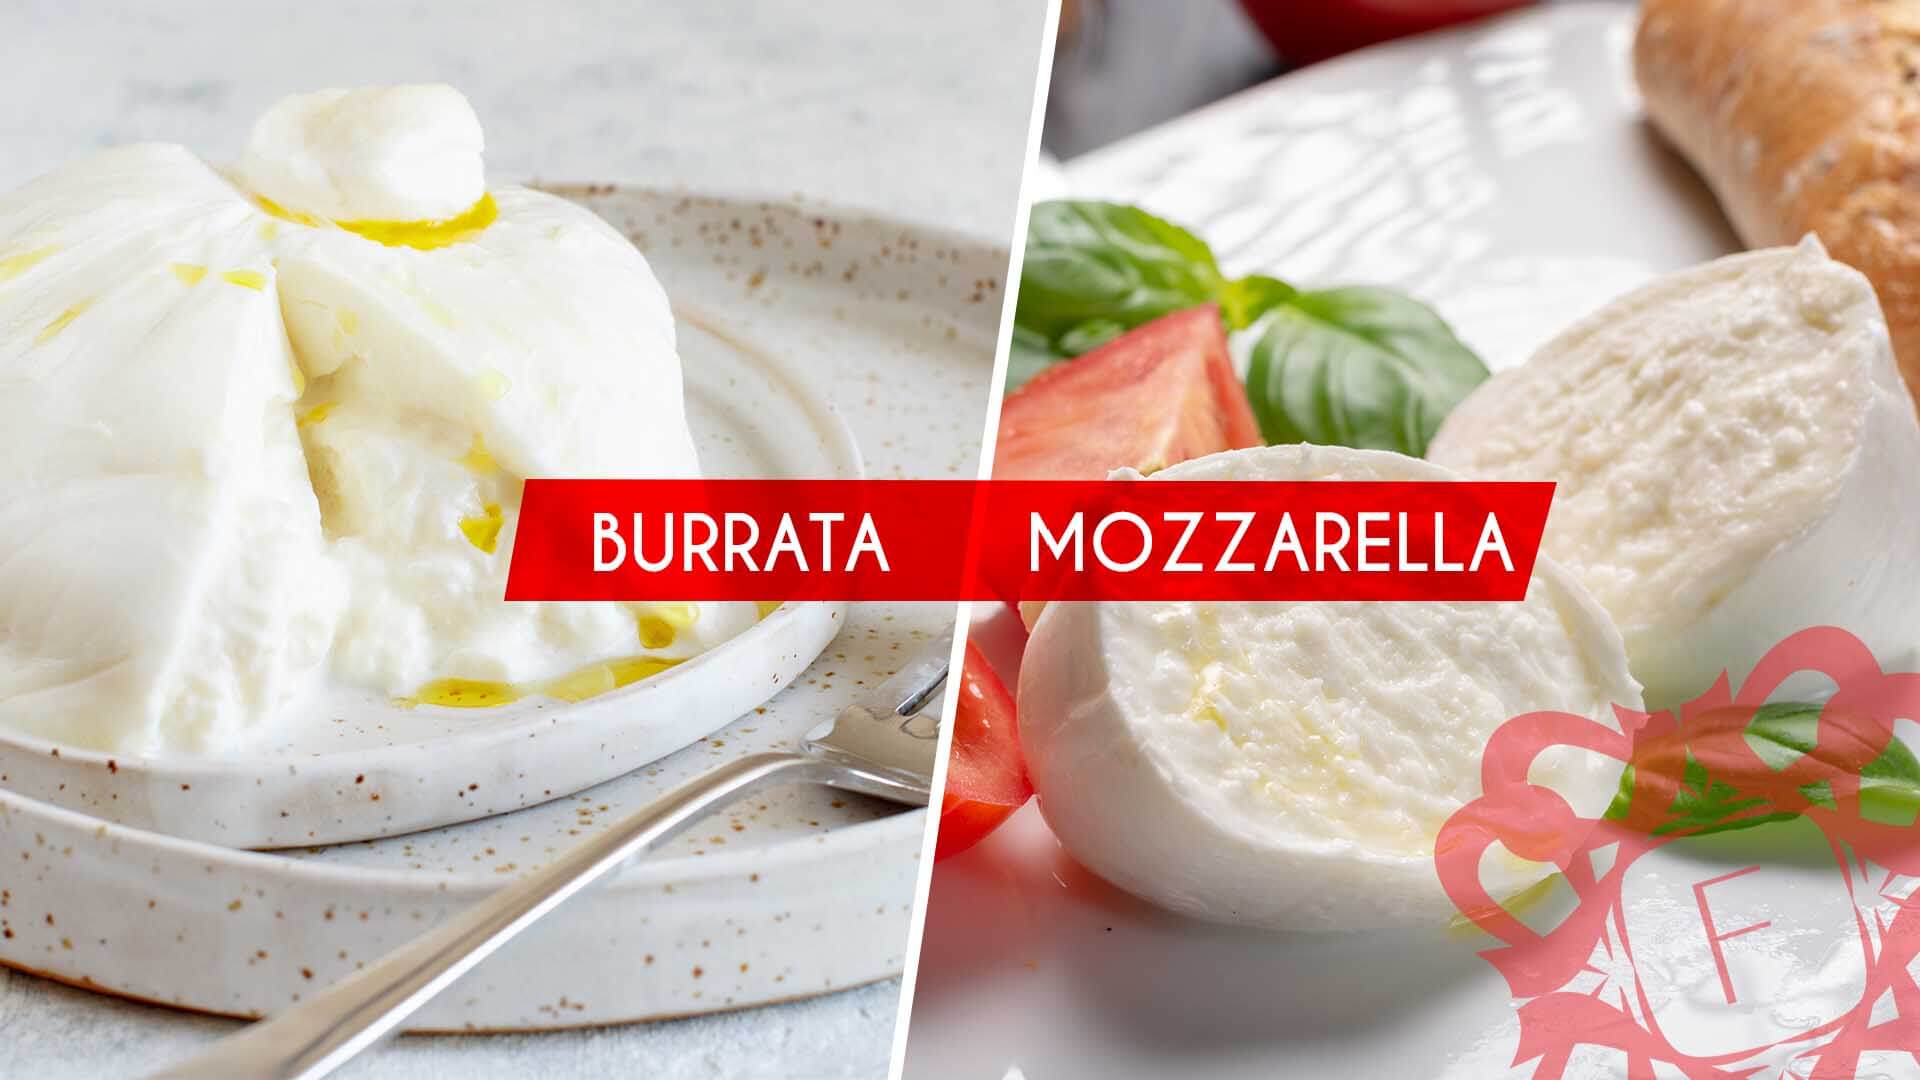 Read more about the article Afla care e diferenta intre Burrata si Mozzarella